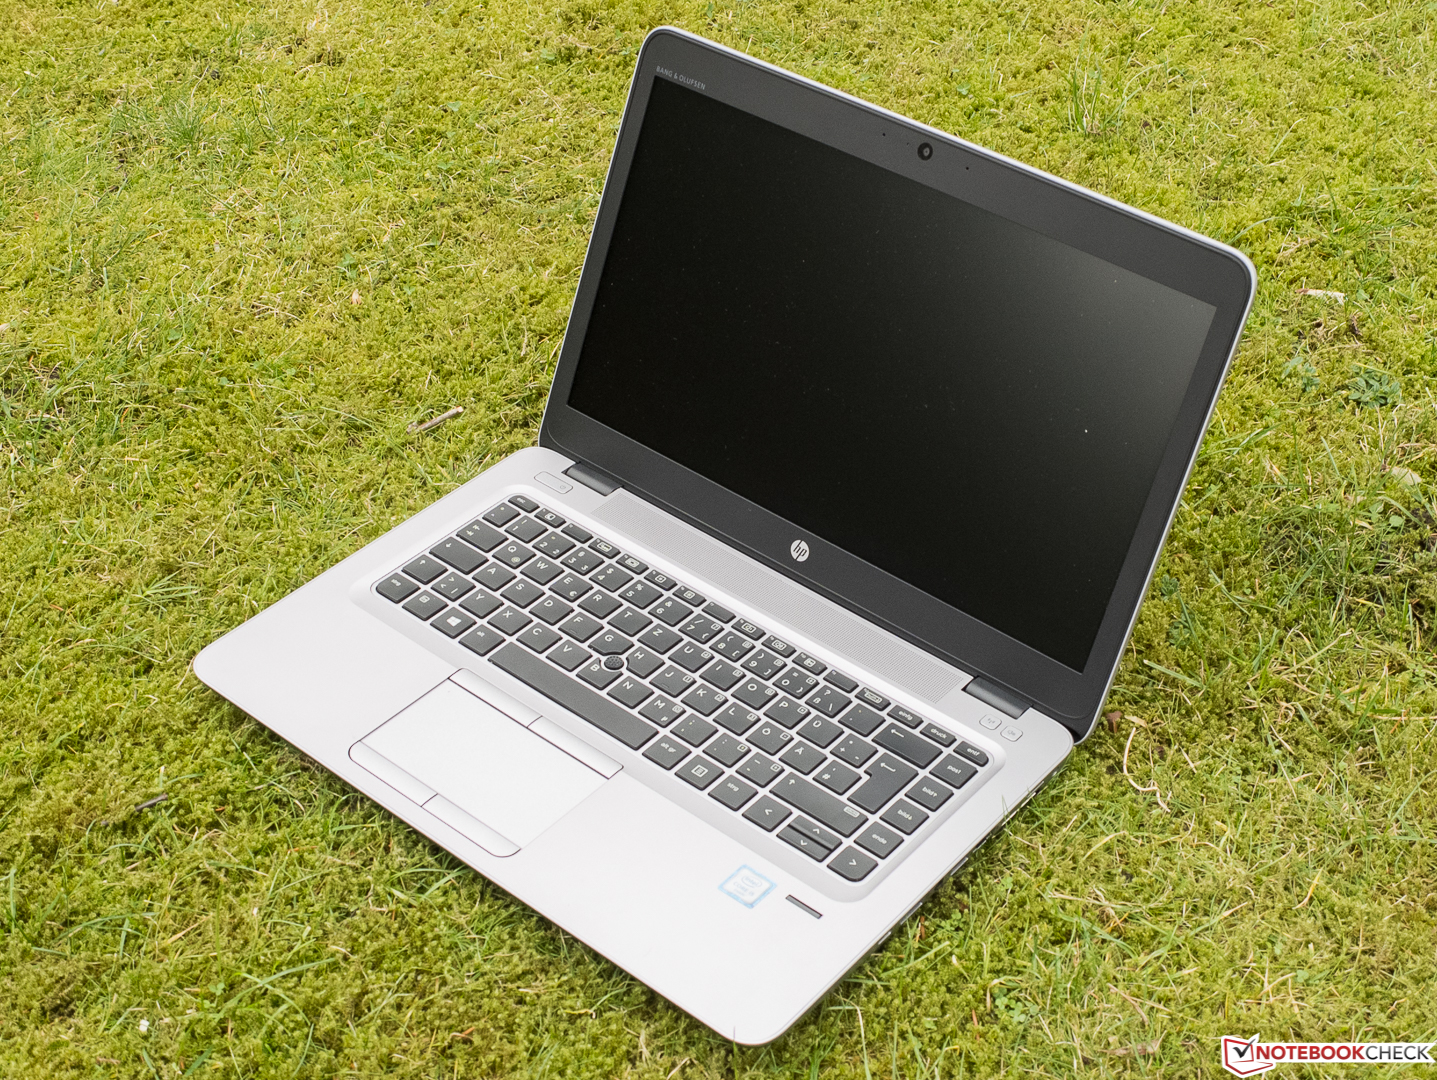 Breve Análise do Portátil HP EliteBook 840 G3 - Notebookcheck.info